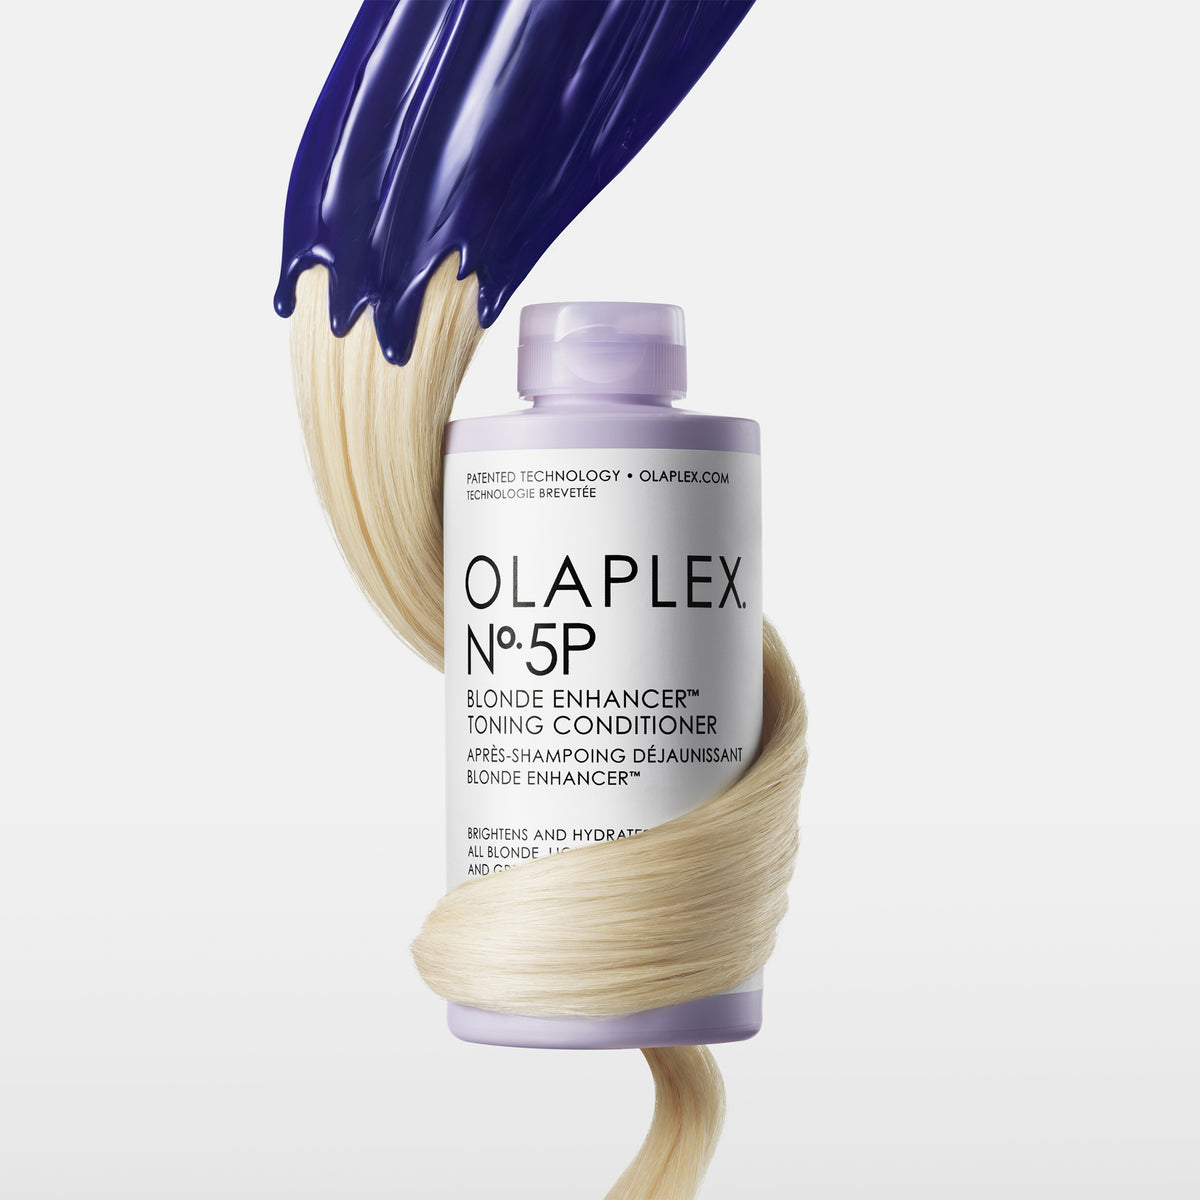 OLAPLEX | No.5P Blonde Enhancer Toning Conditioner